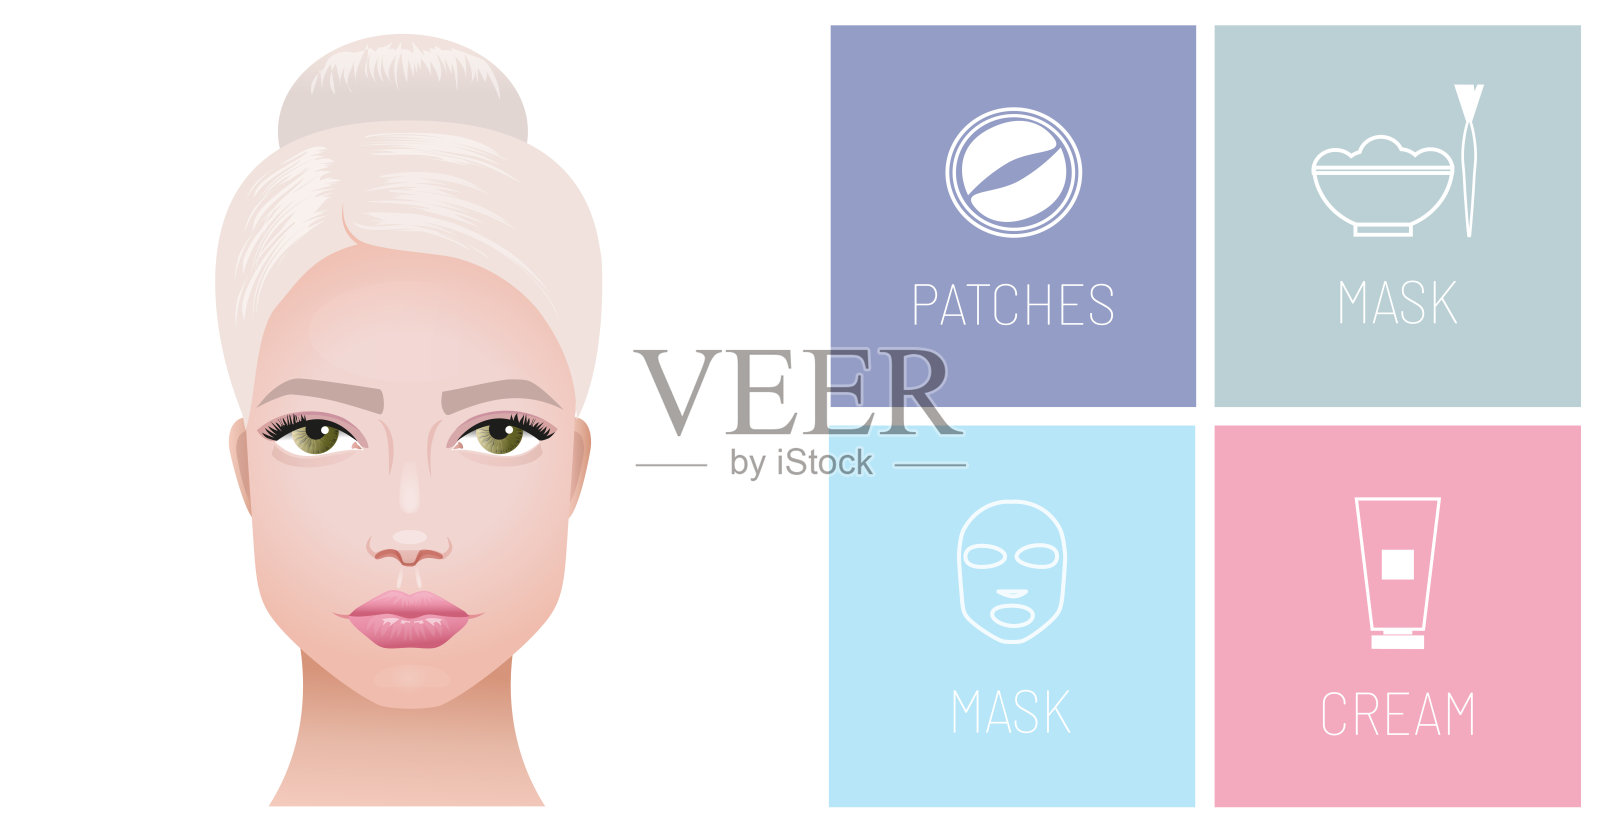 护肤，护肤化妆品的标志，水凝胶眼罩，面膜，有机面膜，保湿霜。向量现实的例证。插画图片素材